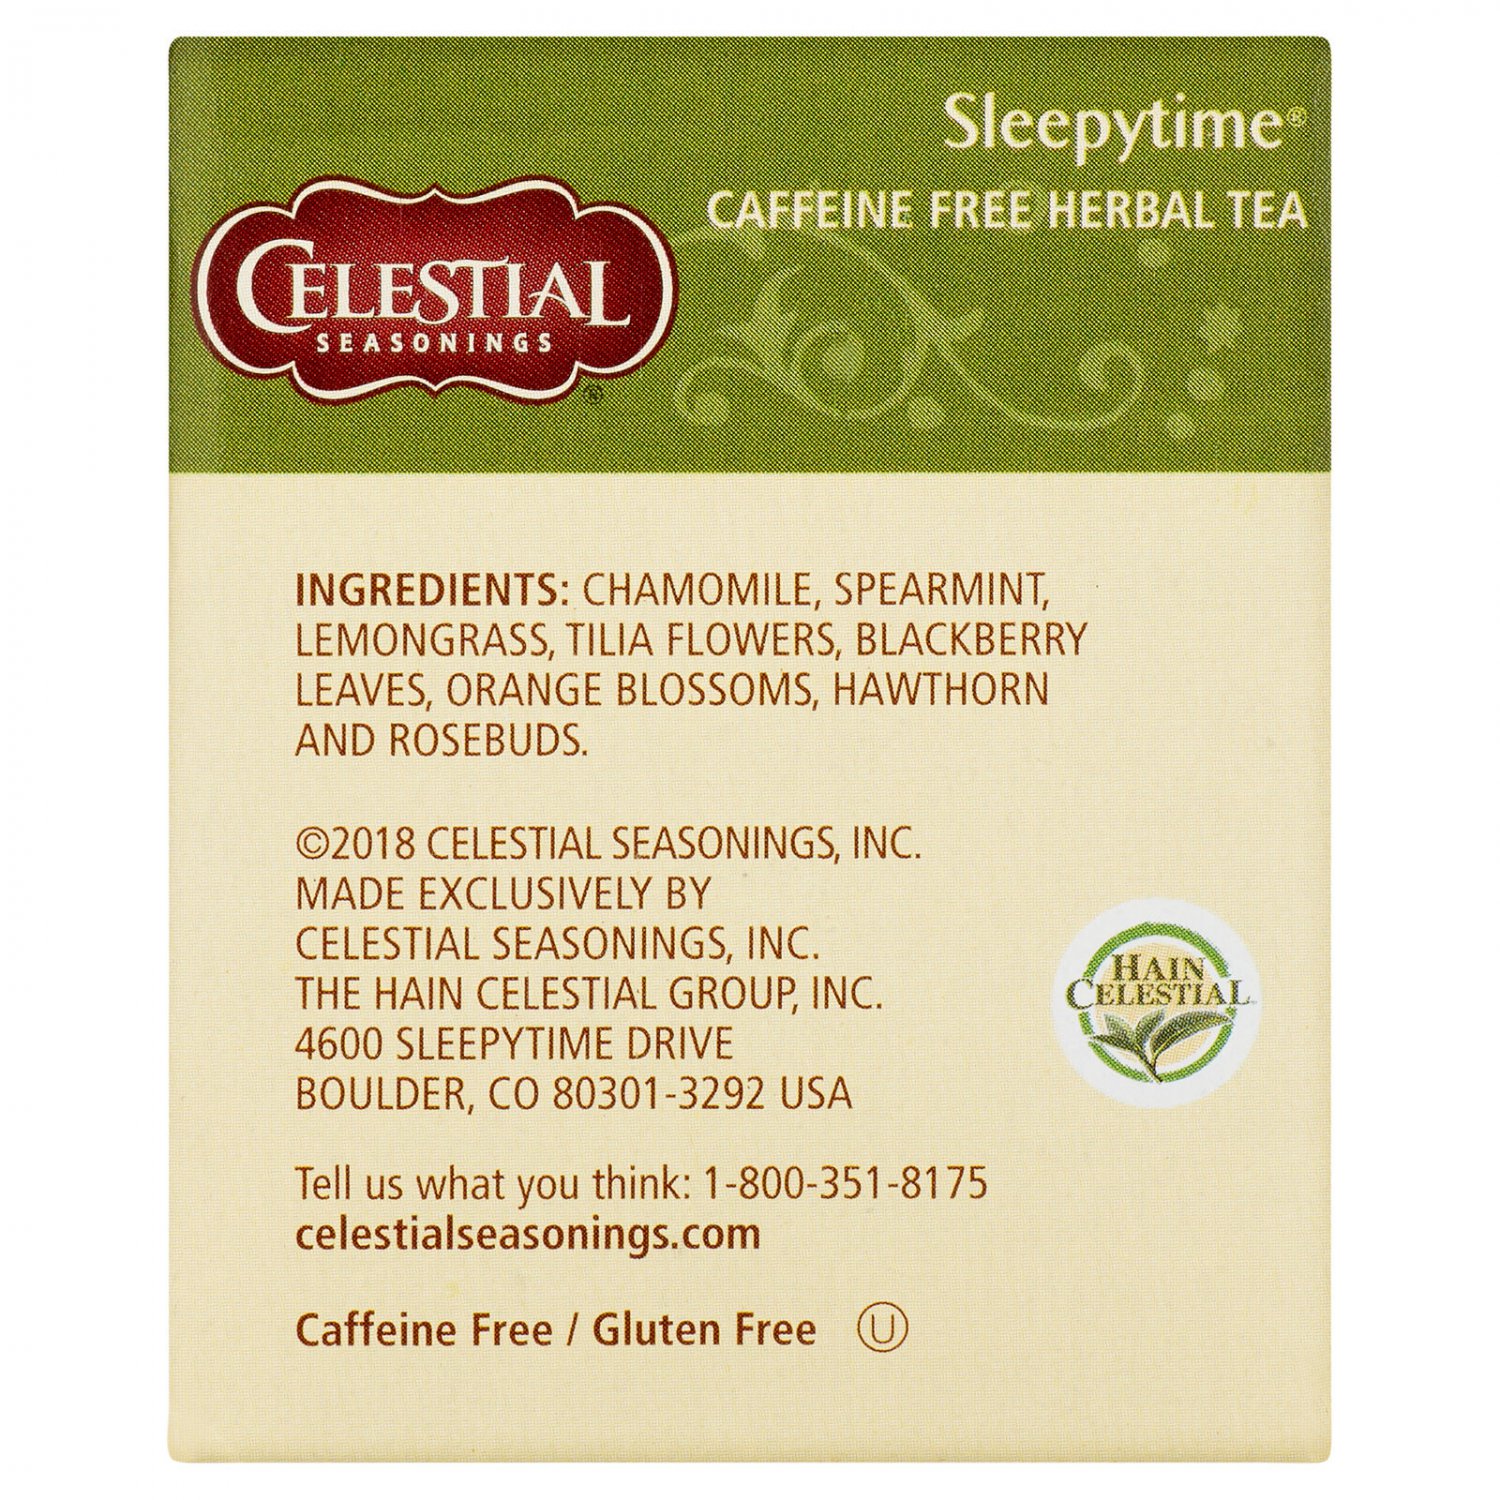 ingredients in celestial seasons sleepytime tea